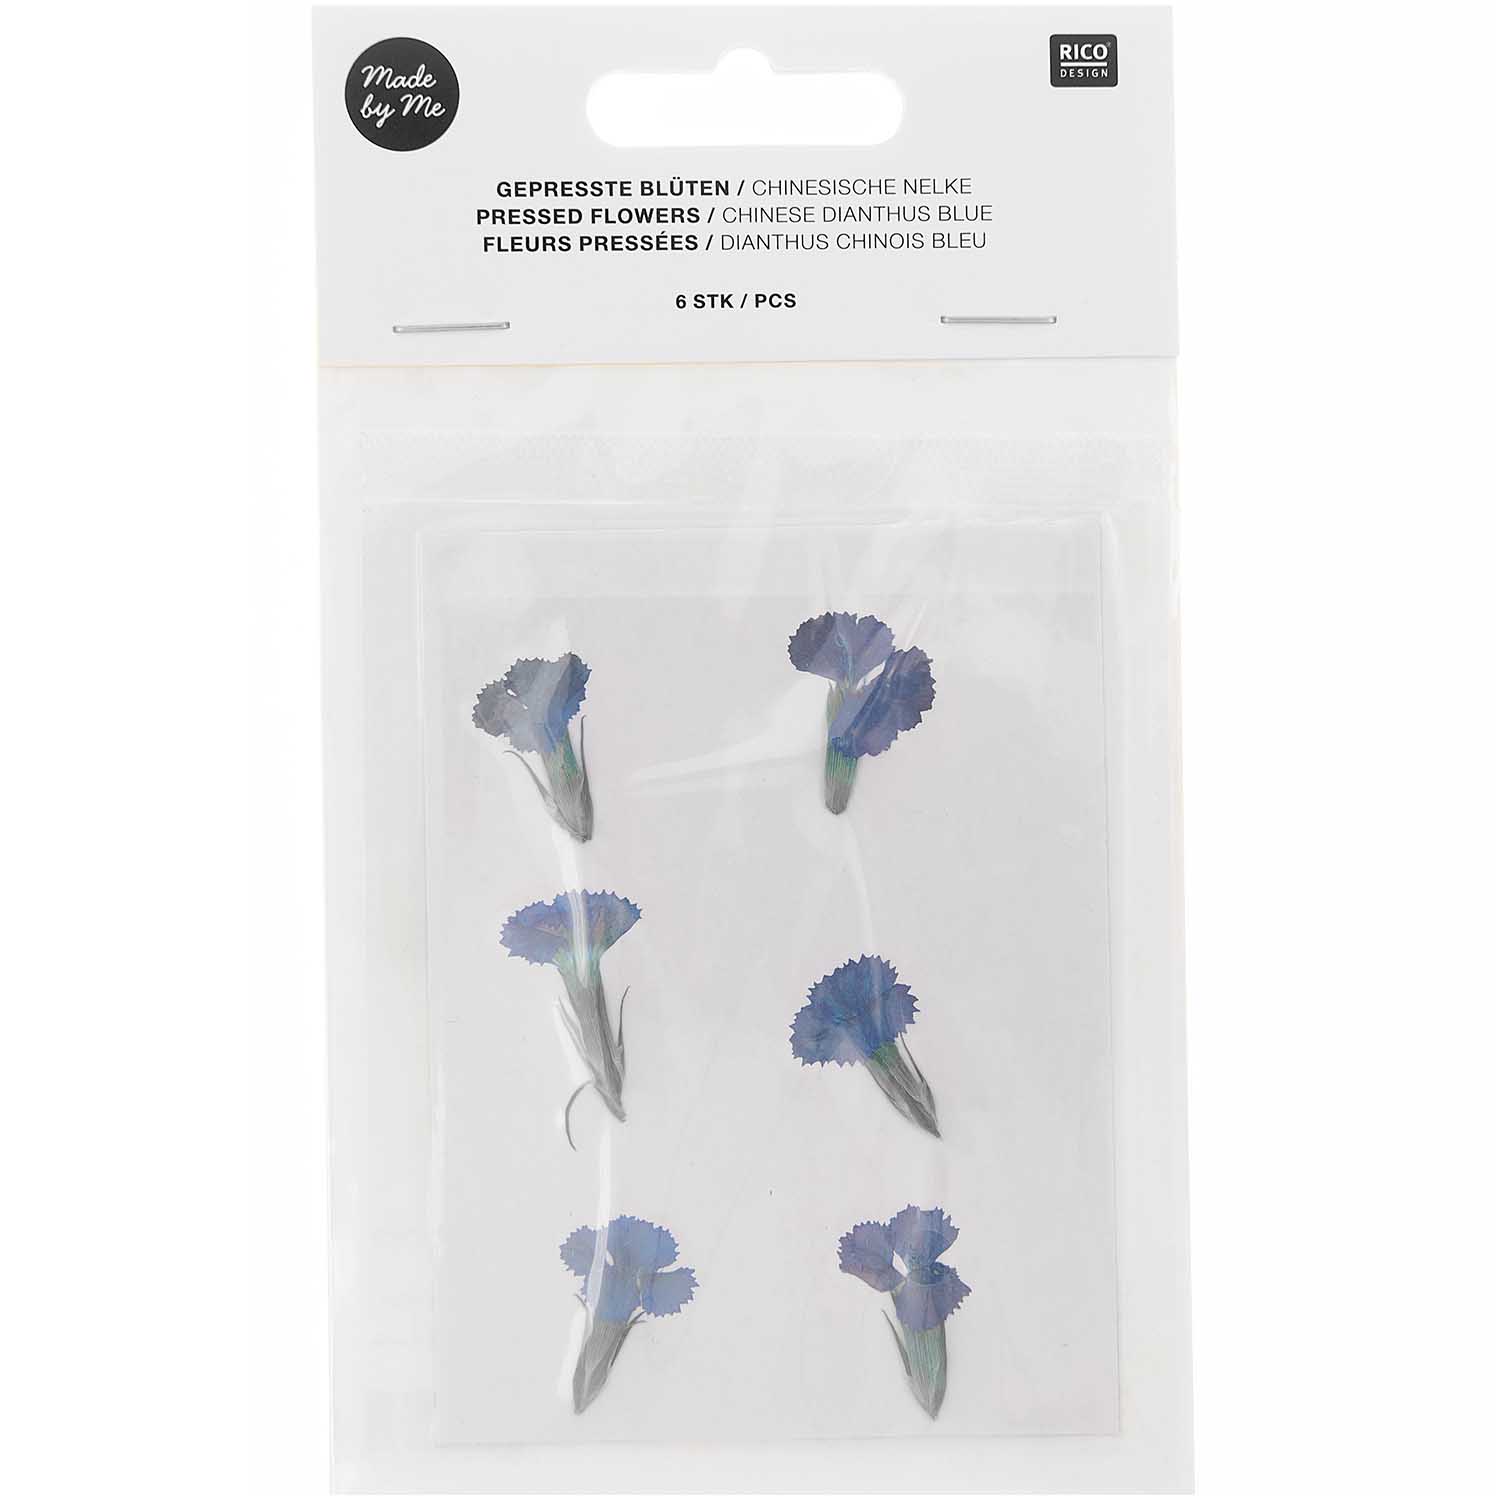 Gepresste Blüten Chinesische Nelke blau 6Stk. ca. 2,5cm